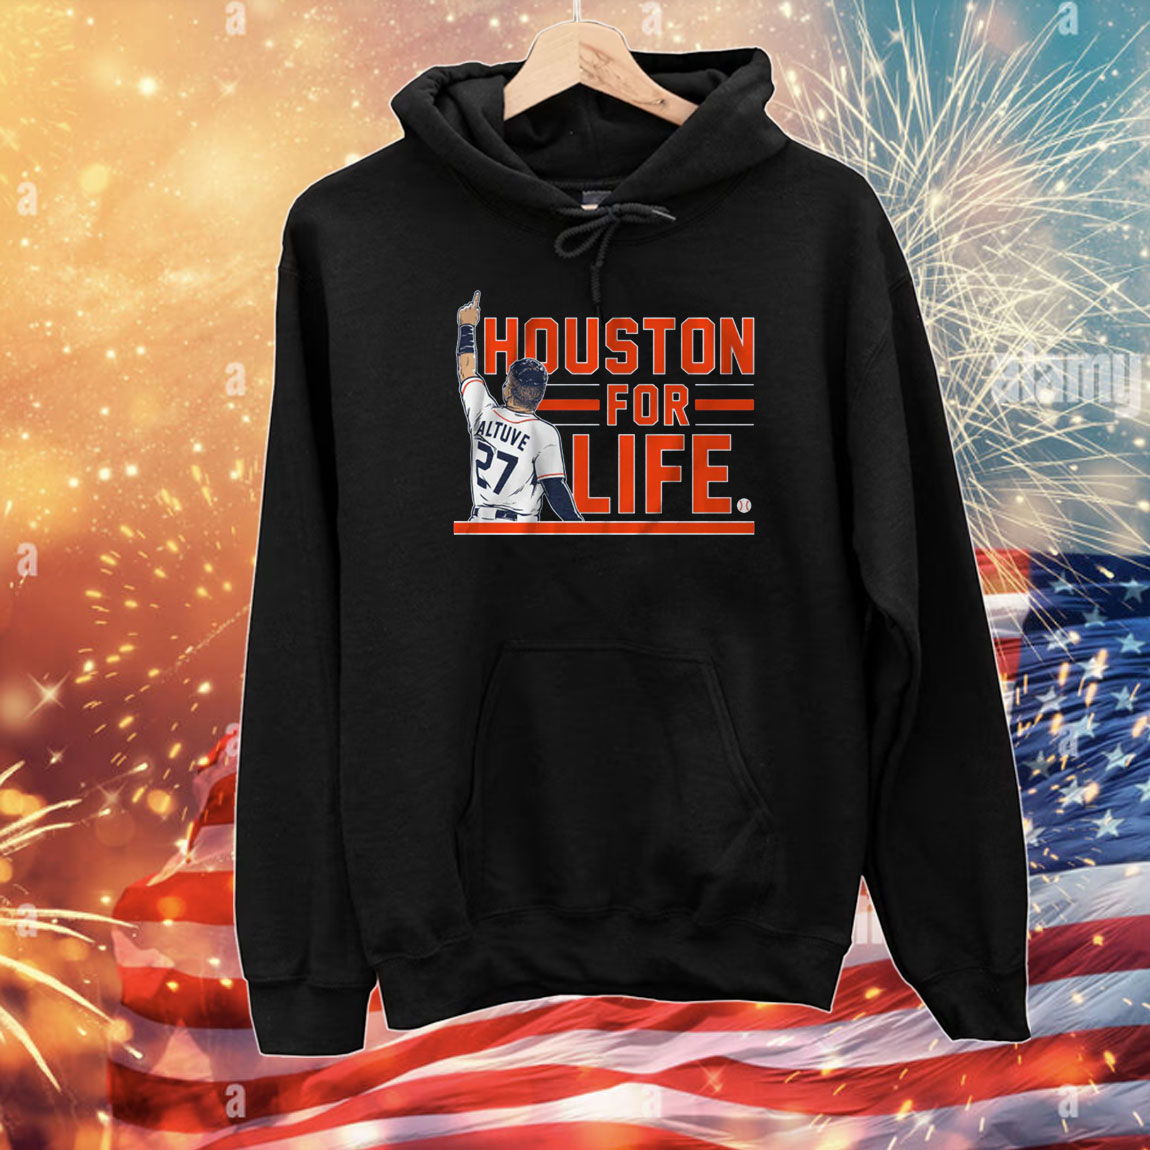 Jose Altuve: Houston For Life T-Shirts